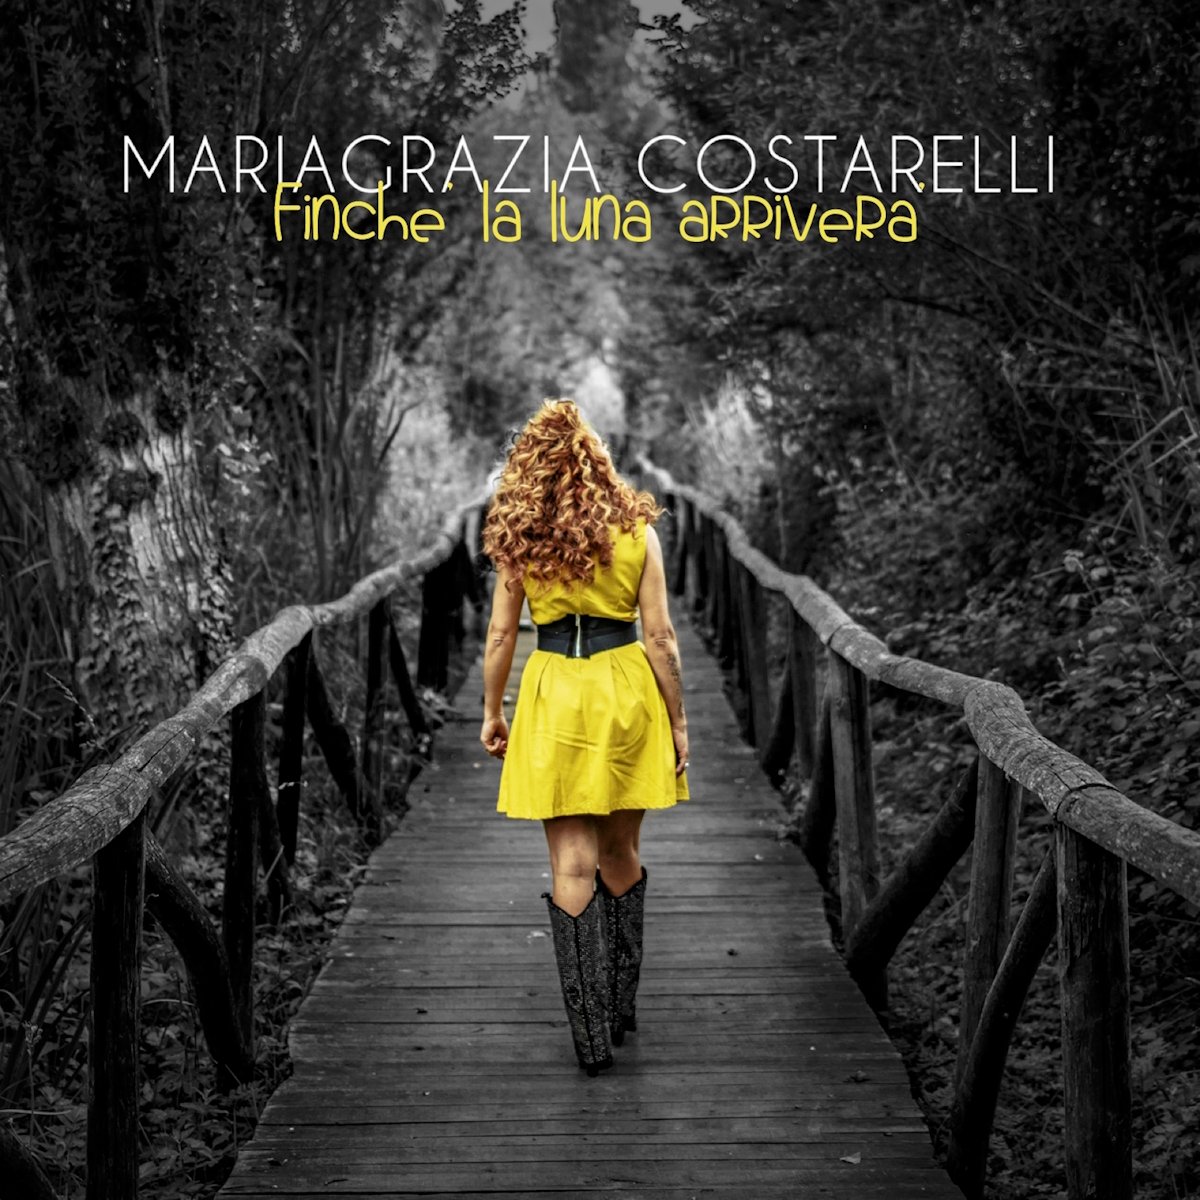 Maria Grazia Costarelli, esce in radio “Finchè La Luna Arriverà” il nuovo singolo